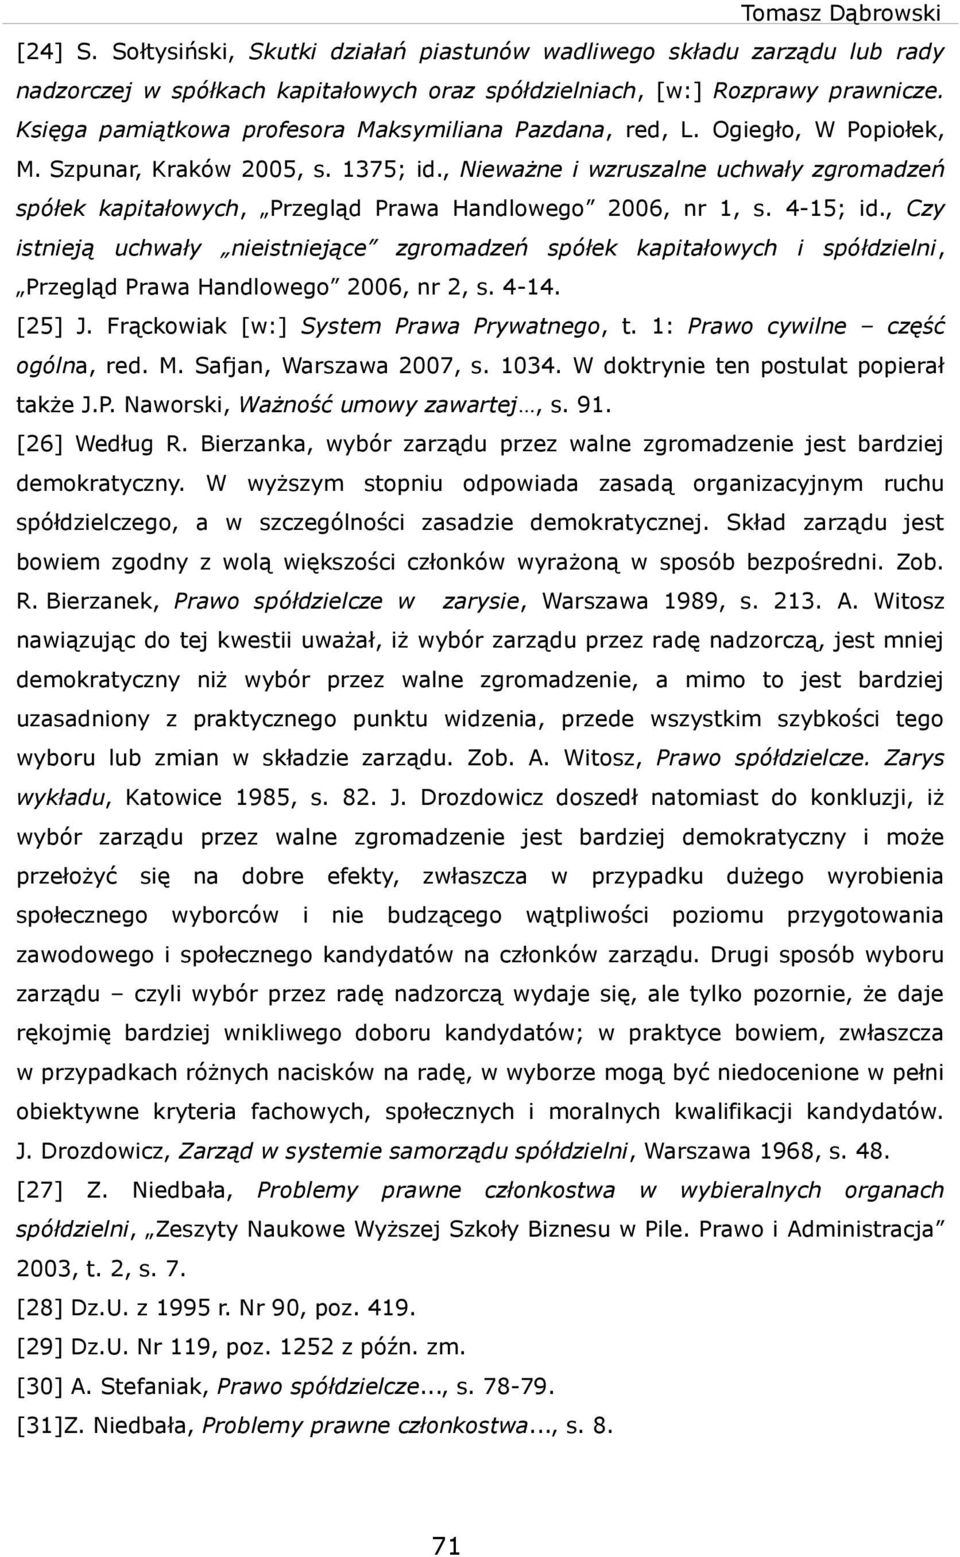 , Nieażne i zruszalne uchały zgromadzeń spółek kapitałoych, Przegląd Praa Handloego 2006, nr 1, s. 4-15; id.